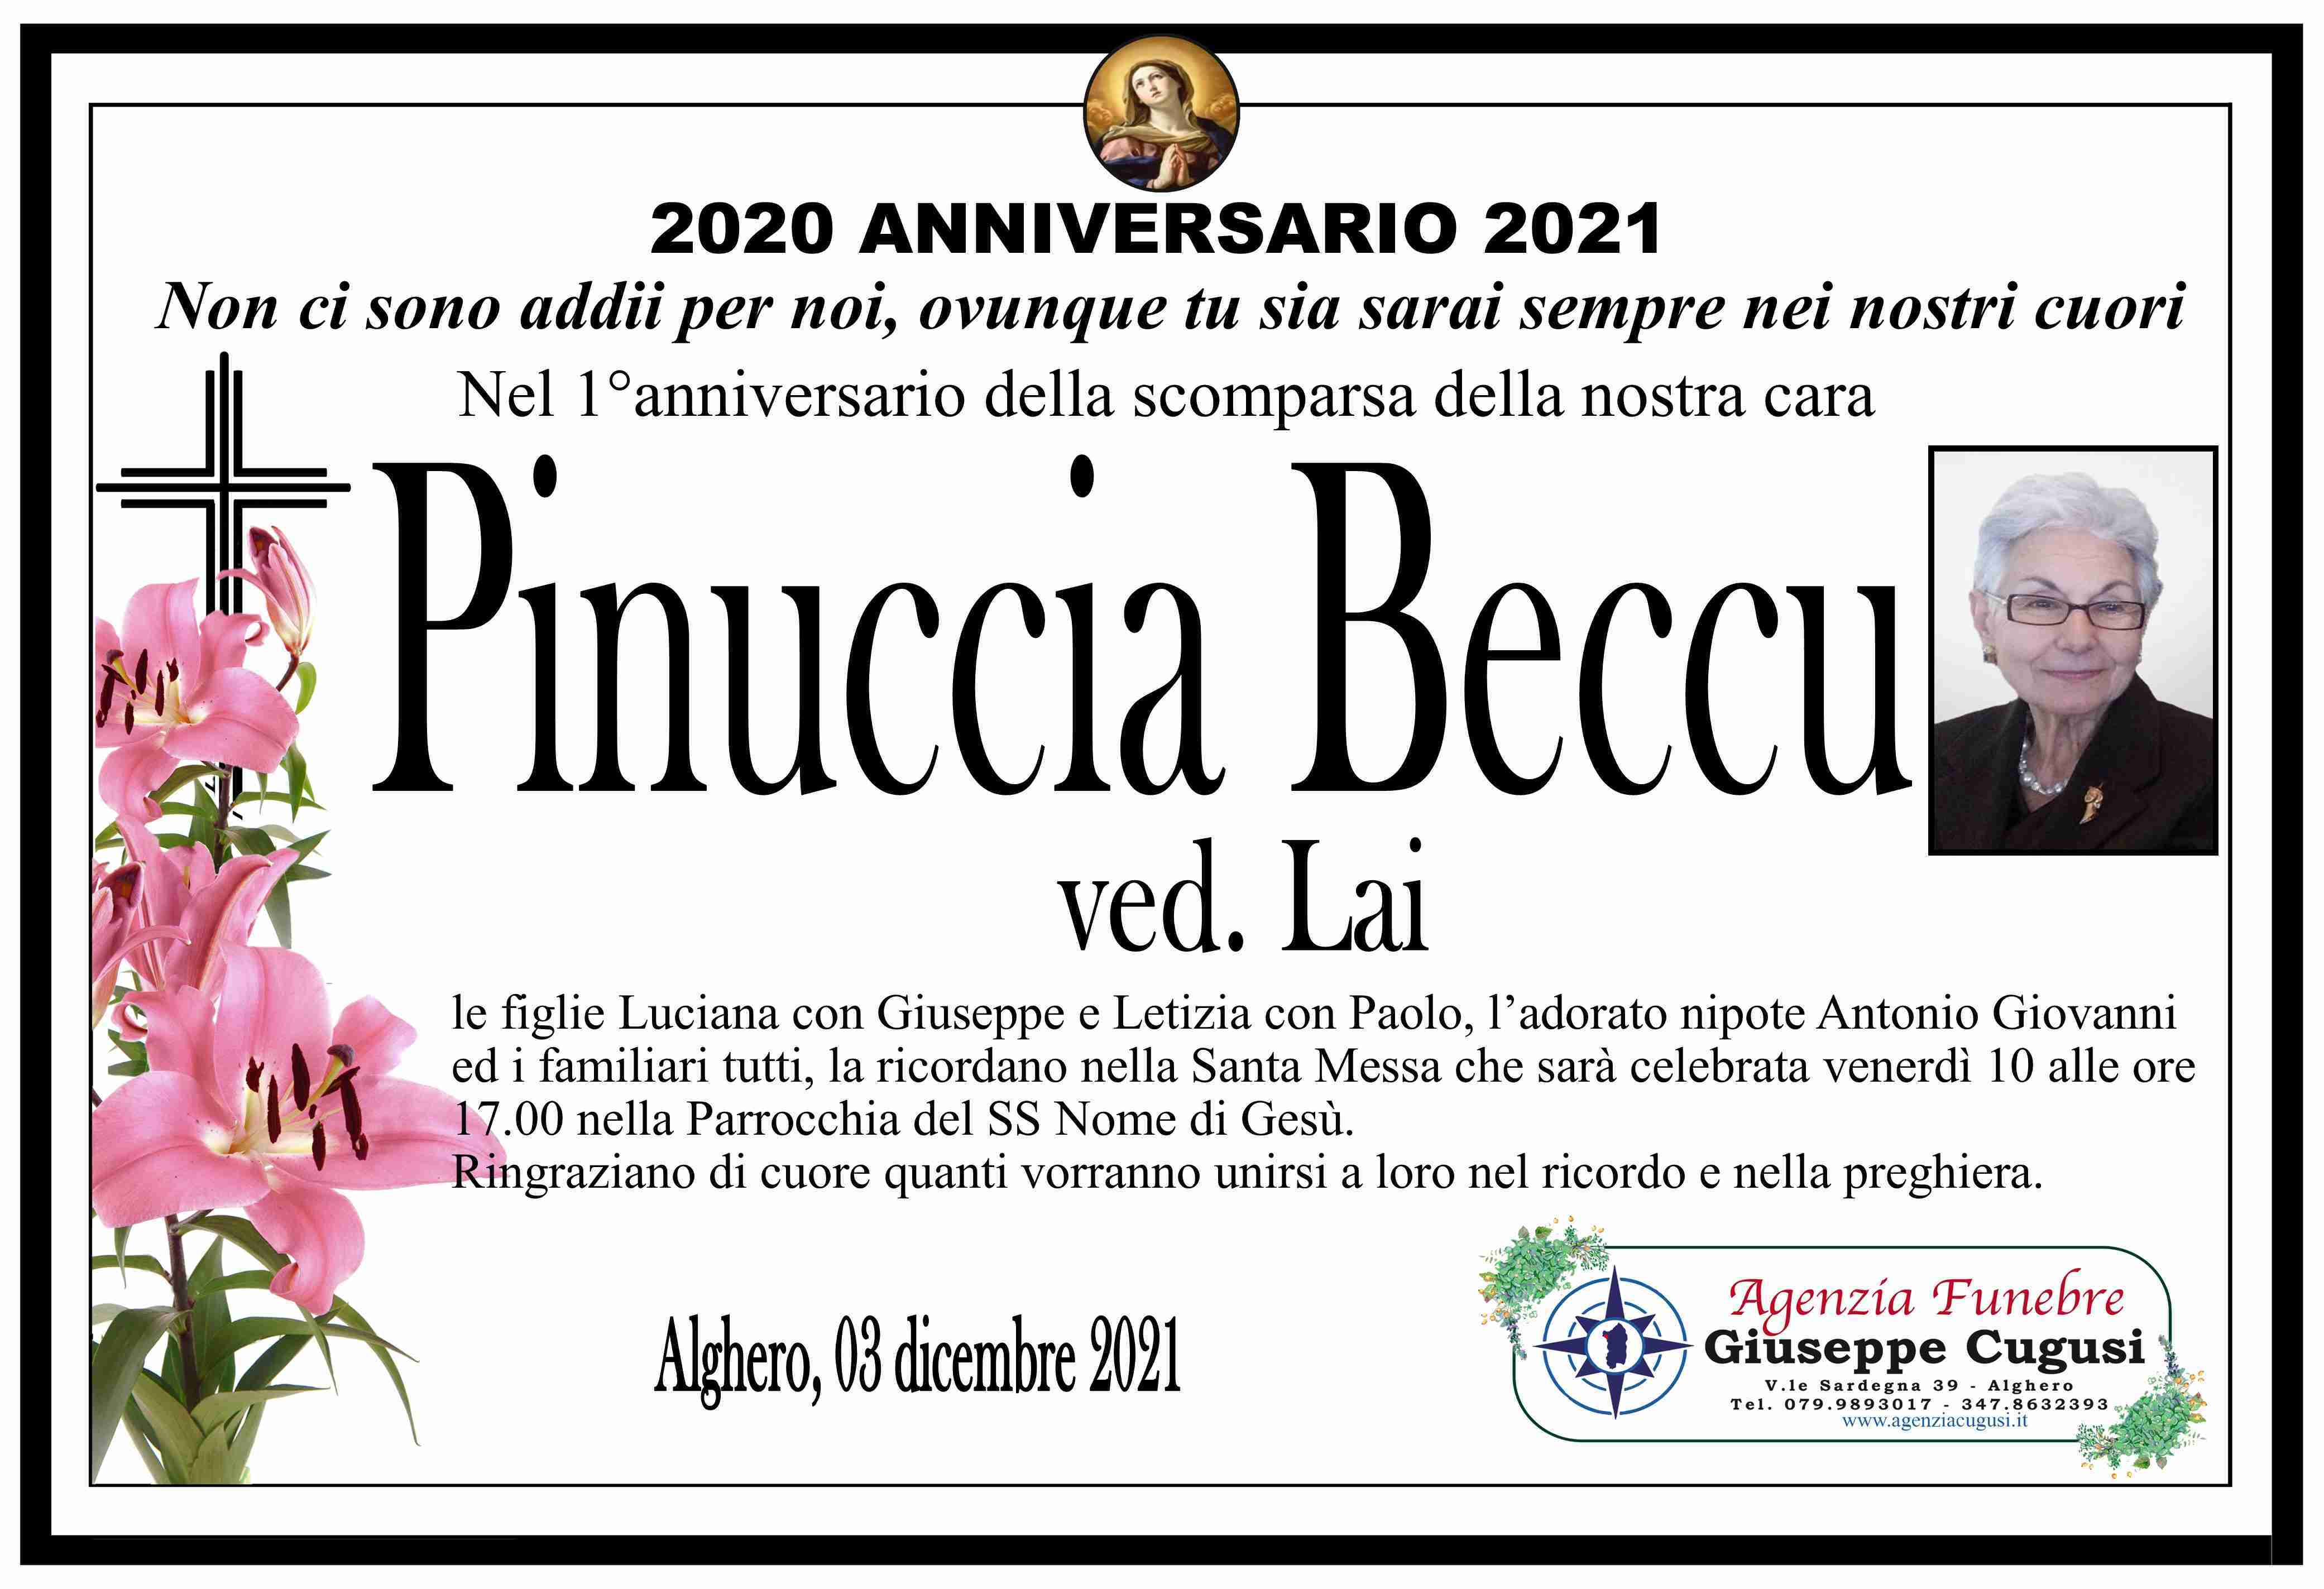 Pinuccia Beccu